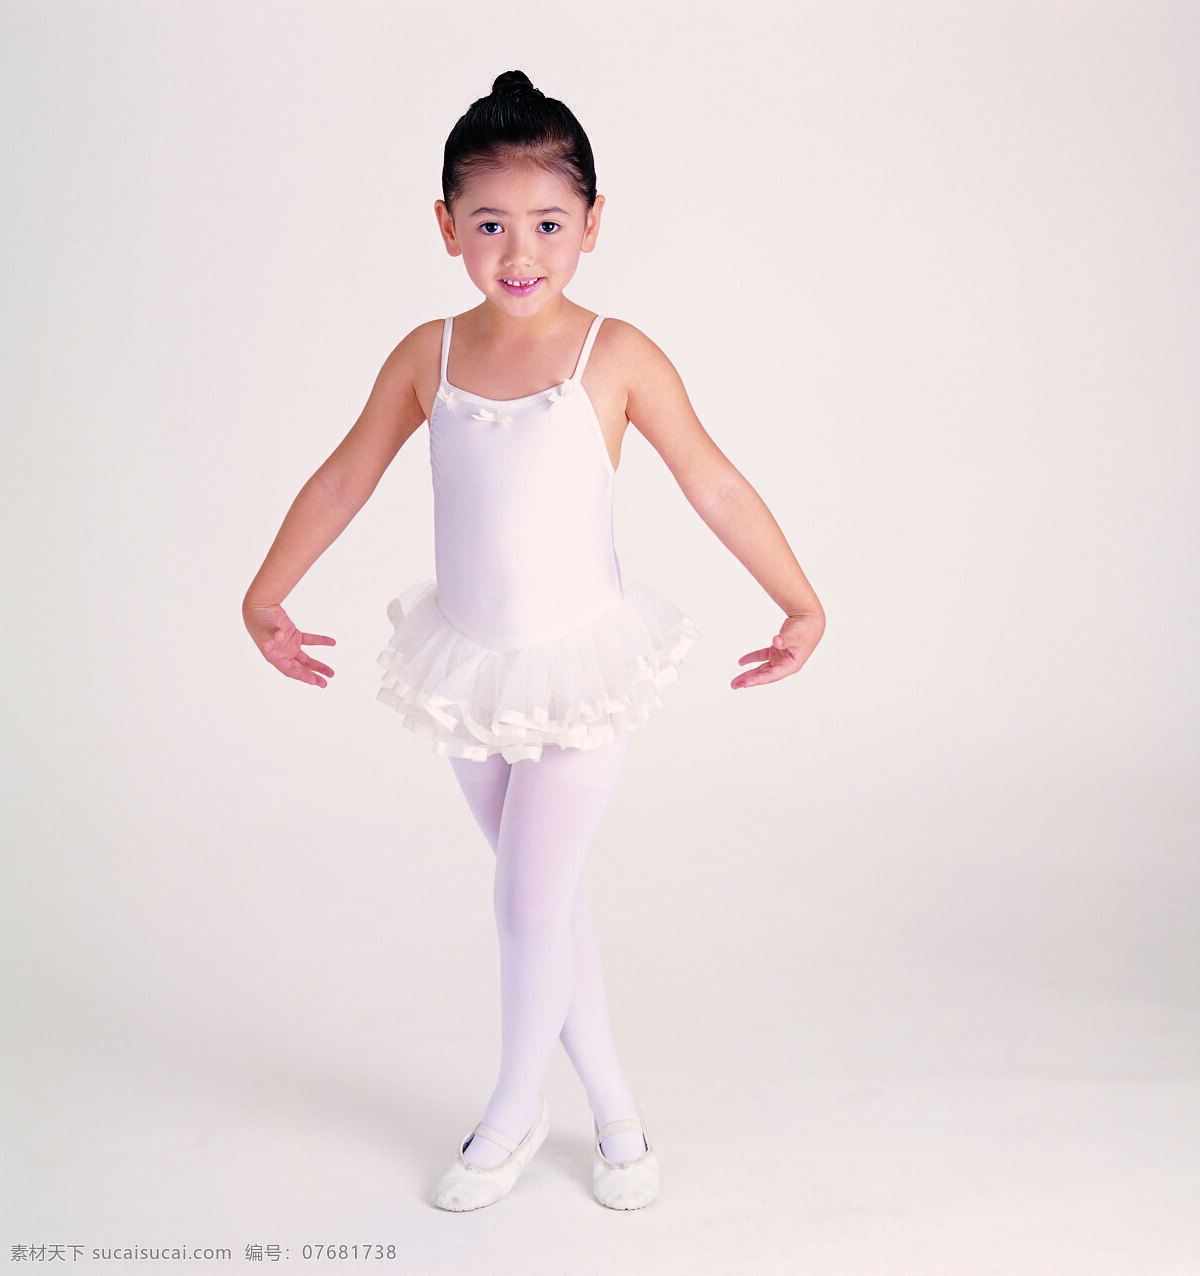 芭蕾舞 小女孩 跳舞 文化艺术 舞蹈音乐 摄影图库